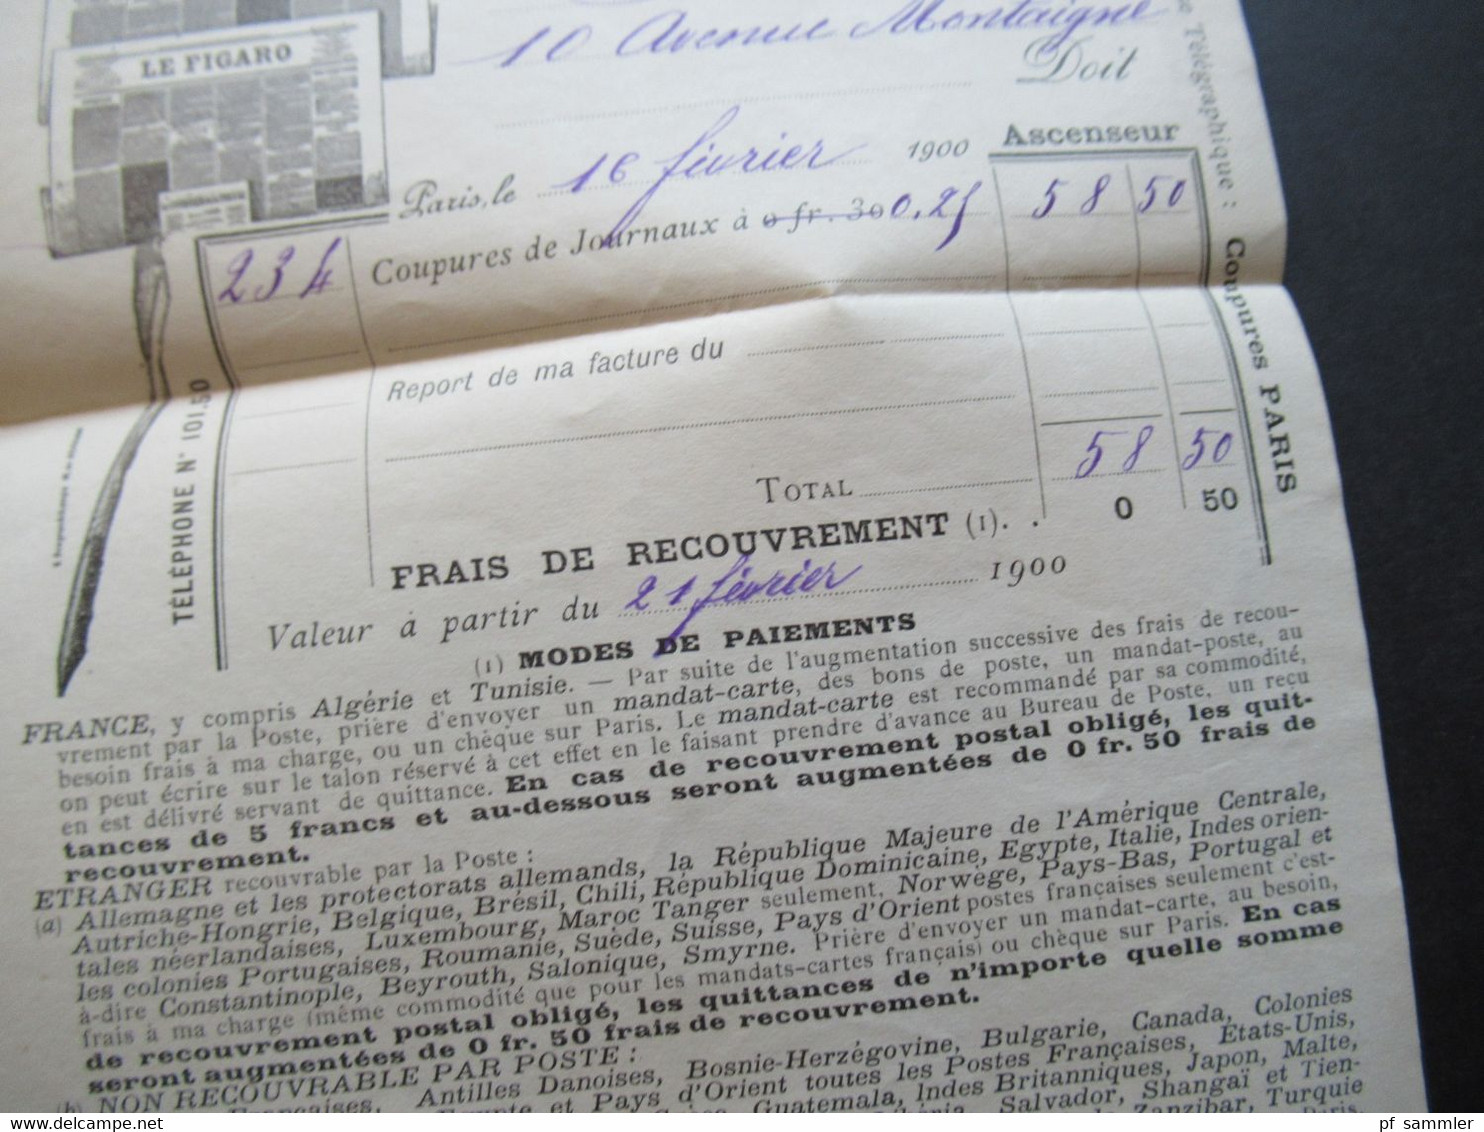 Frankreich 1900 Sage dekorativer Umschlag Courrier de la Presse mit Inhalt / Rechnung Stempel Paris Place de la Bourse